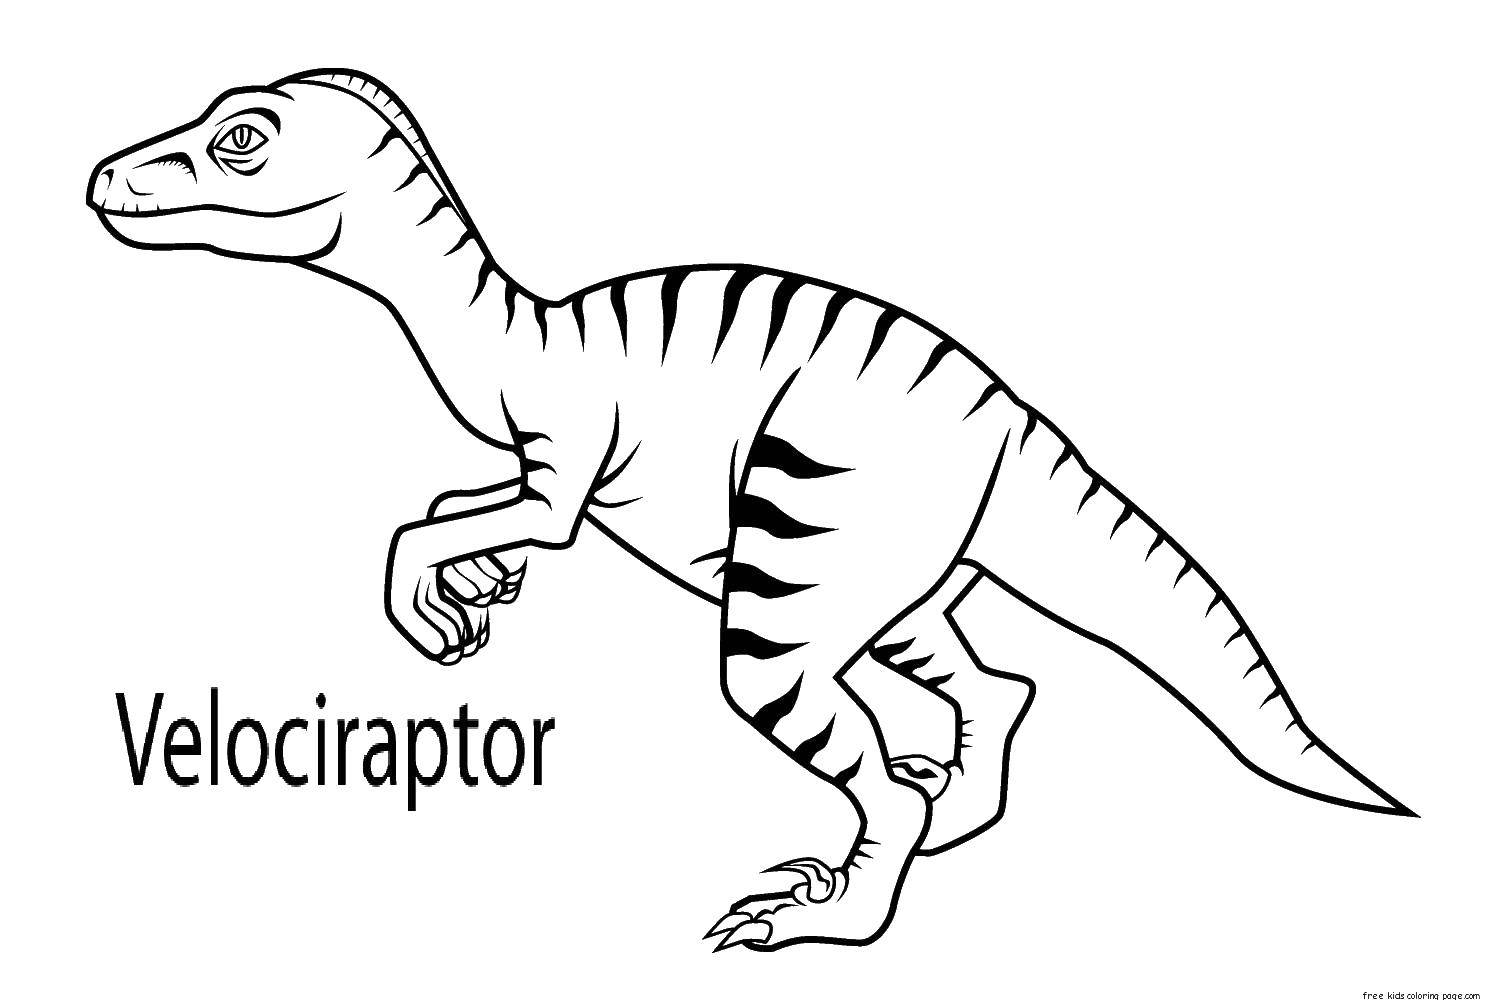 Coloring Velociraptors. Category dinosaur. Tags:  cartoon, dinosaurs, Dinos.